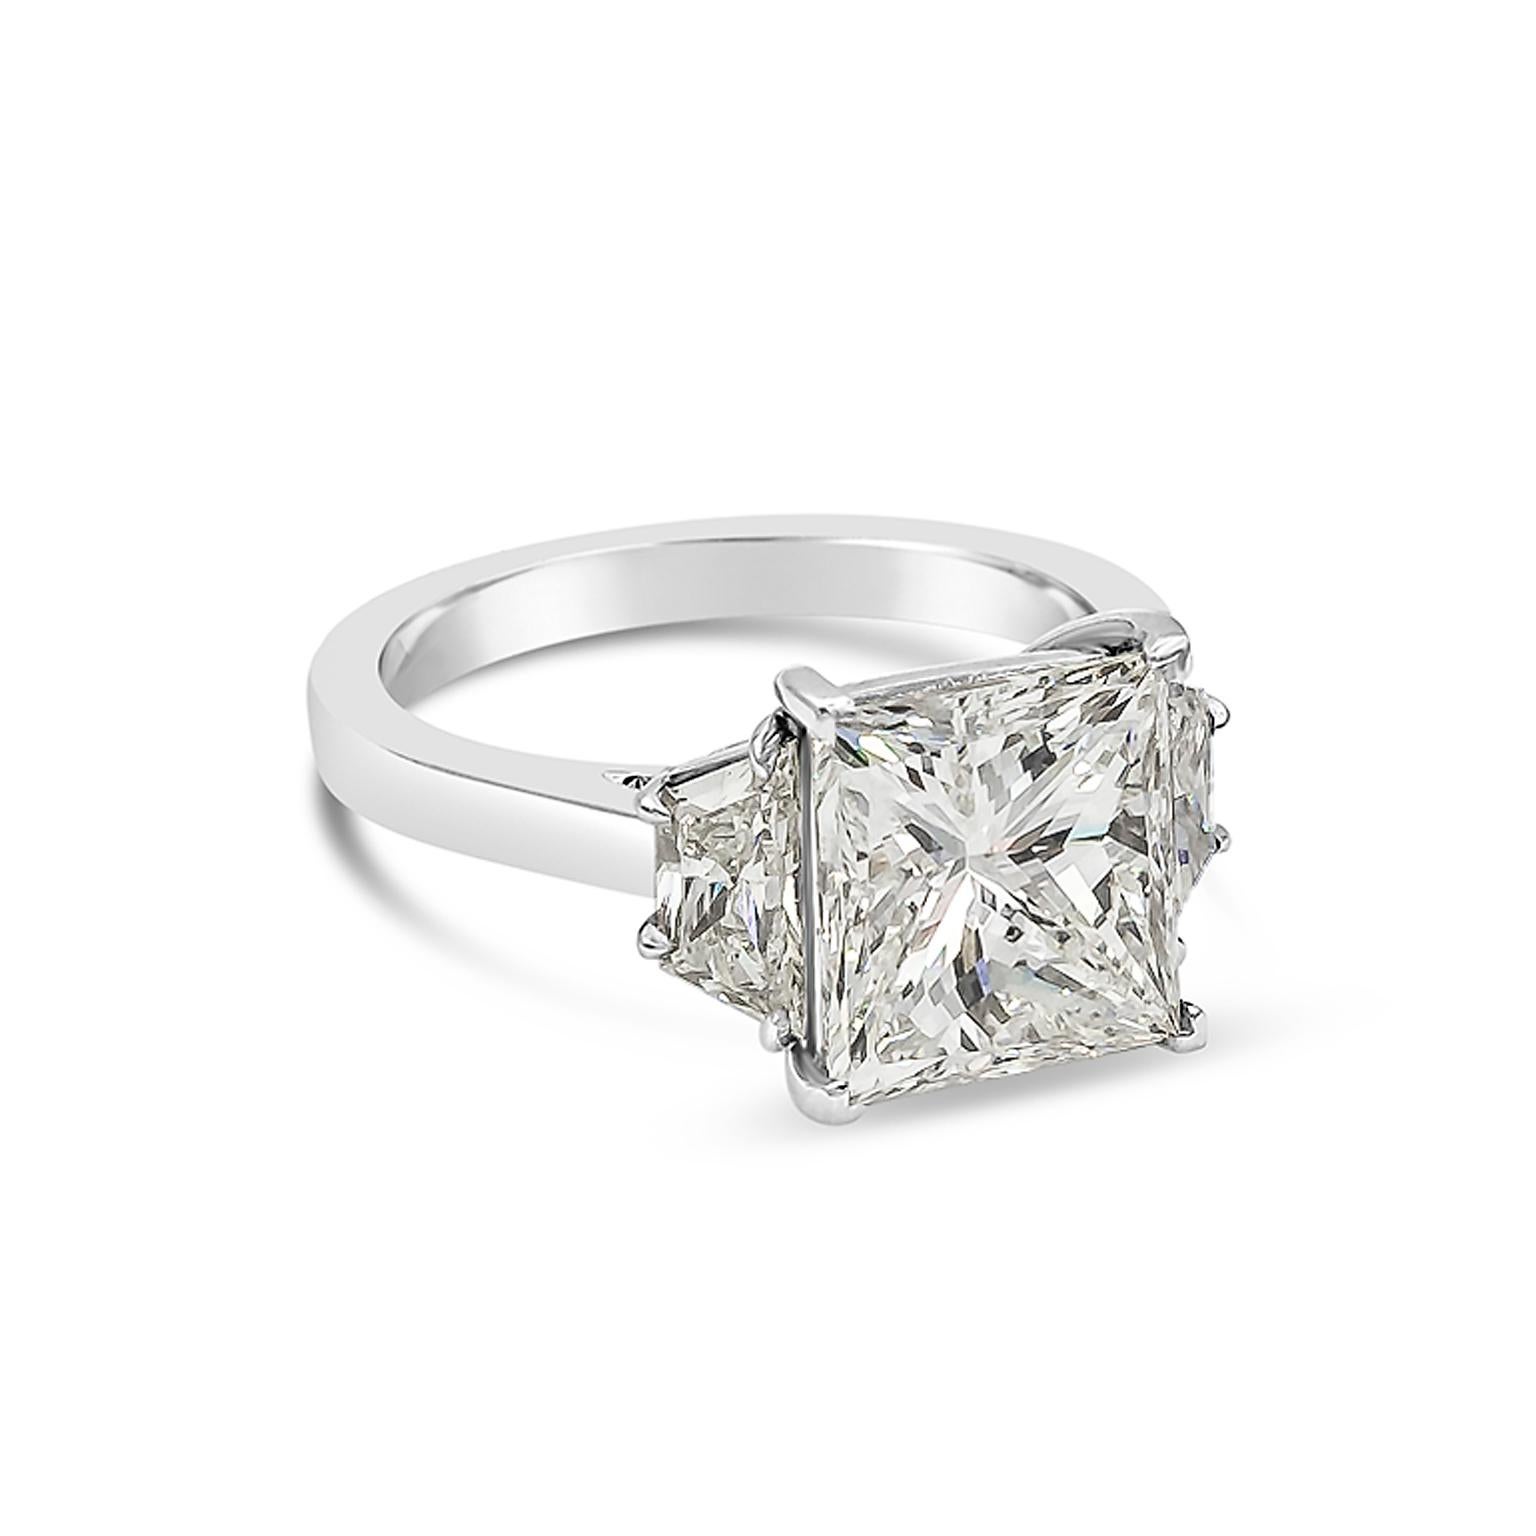 ein klassischer Verlobungsring mit einem 4,03 Karat schweren Diamanten im Prinzessschliff, der von GIA als J Farbe, SI1 Reinheit zertifiziert wurde. Der Mittelstein wird von trapezförmigen Brillanten mit einem Gesamtgewicht von 0,95 Karat flankiert.